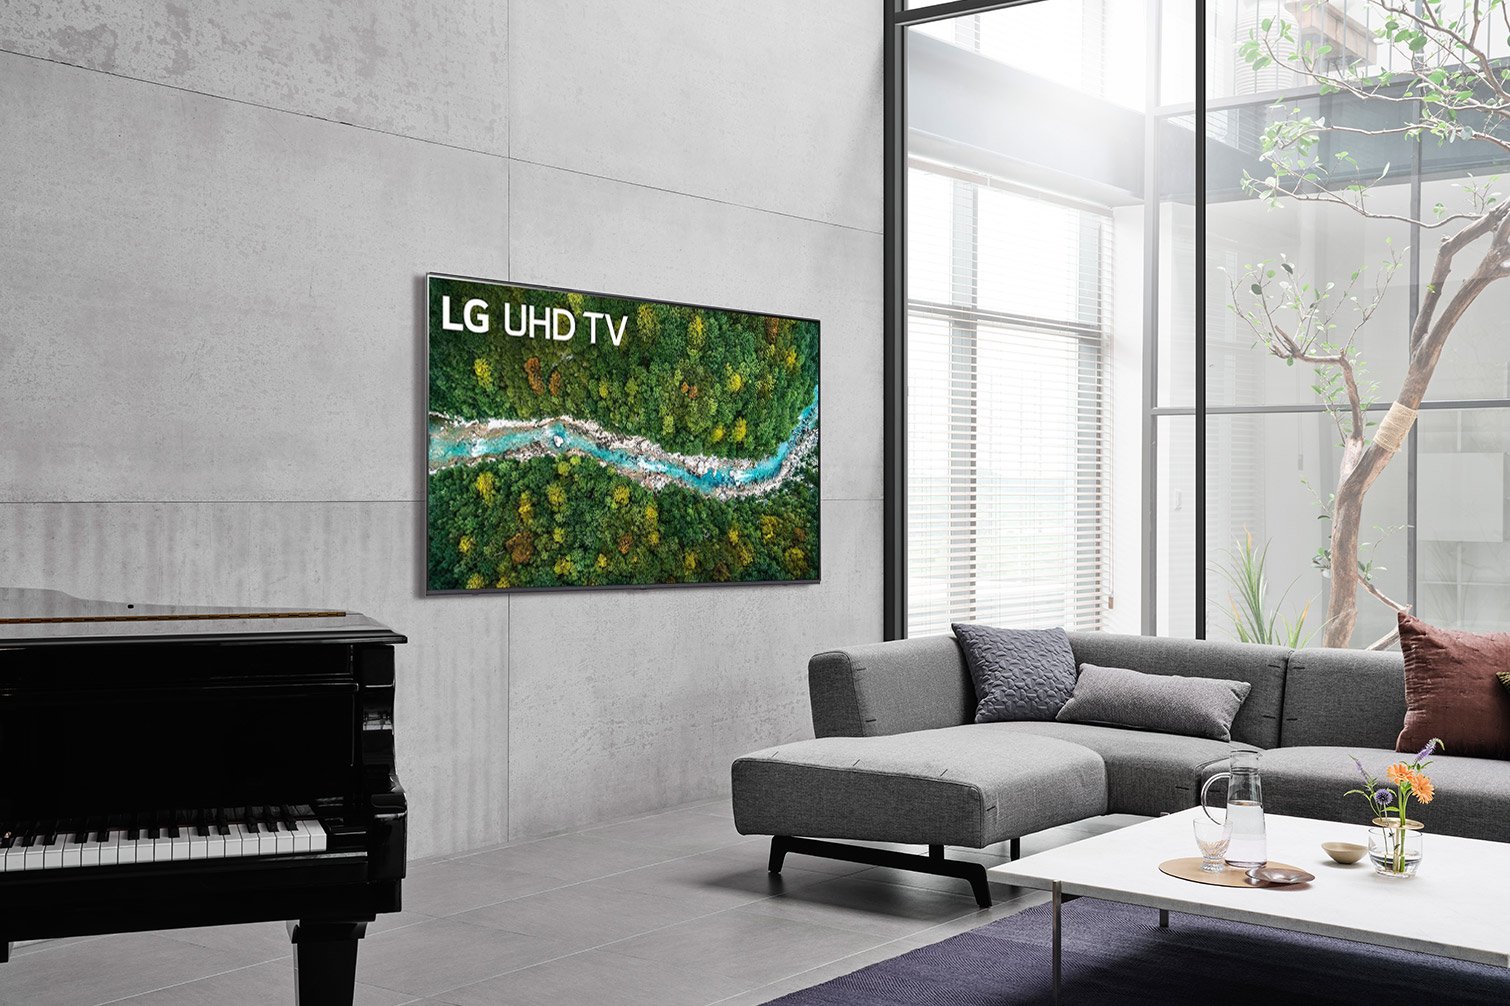 So sánh hai chiếc Smart tivi LG và Smart tivi Samsung trong tầm giá 11 triệu